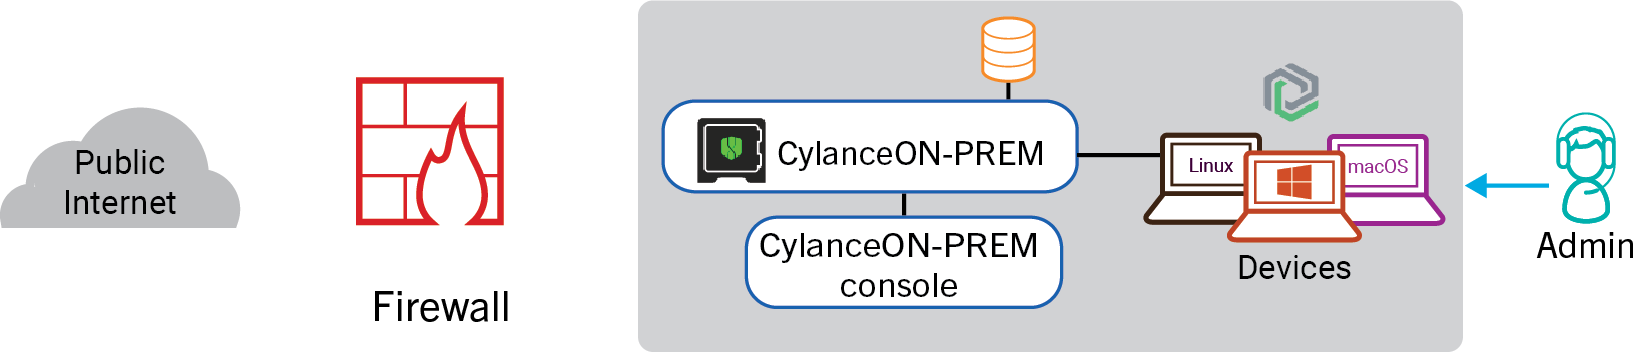 CYlanceON-PREM architecture